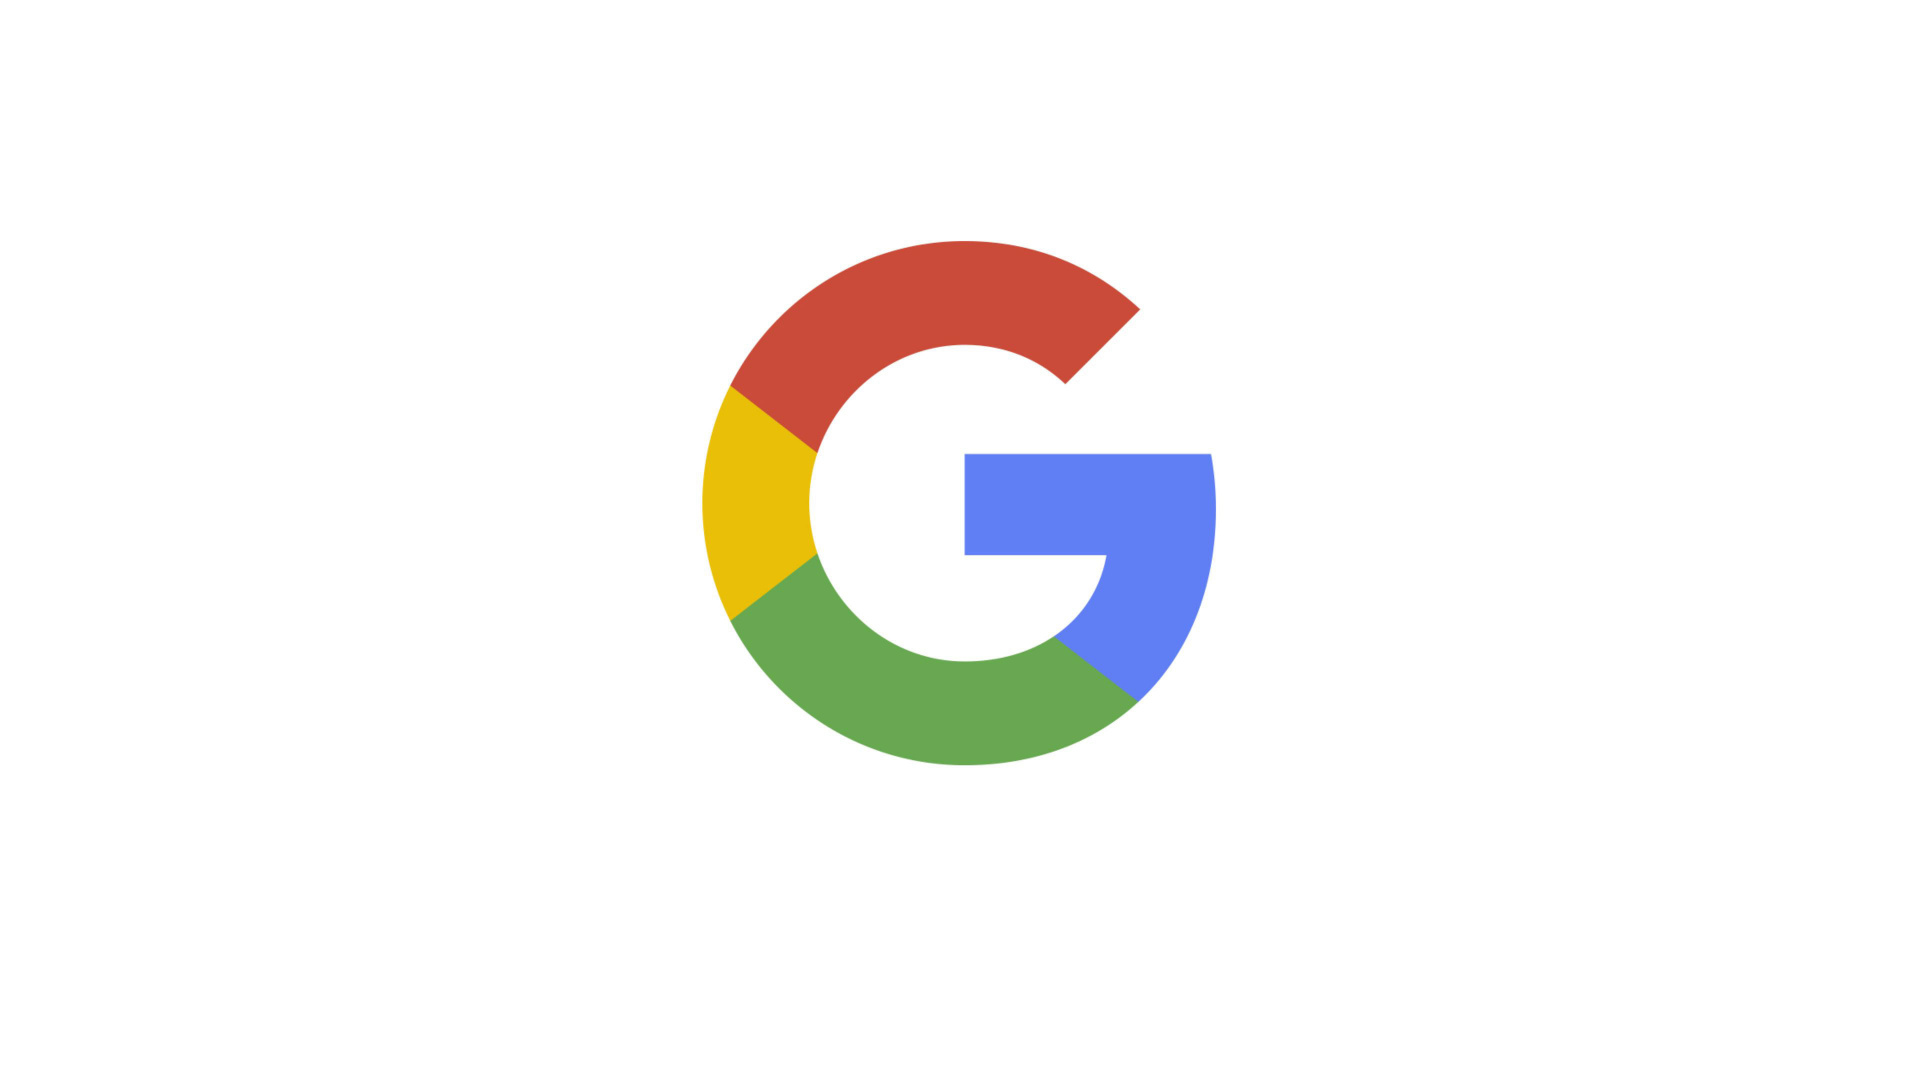 谷歌, 谷歌的标志, 文本, 品牌, 圆圈 壁纸 1920x1080 允许